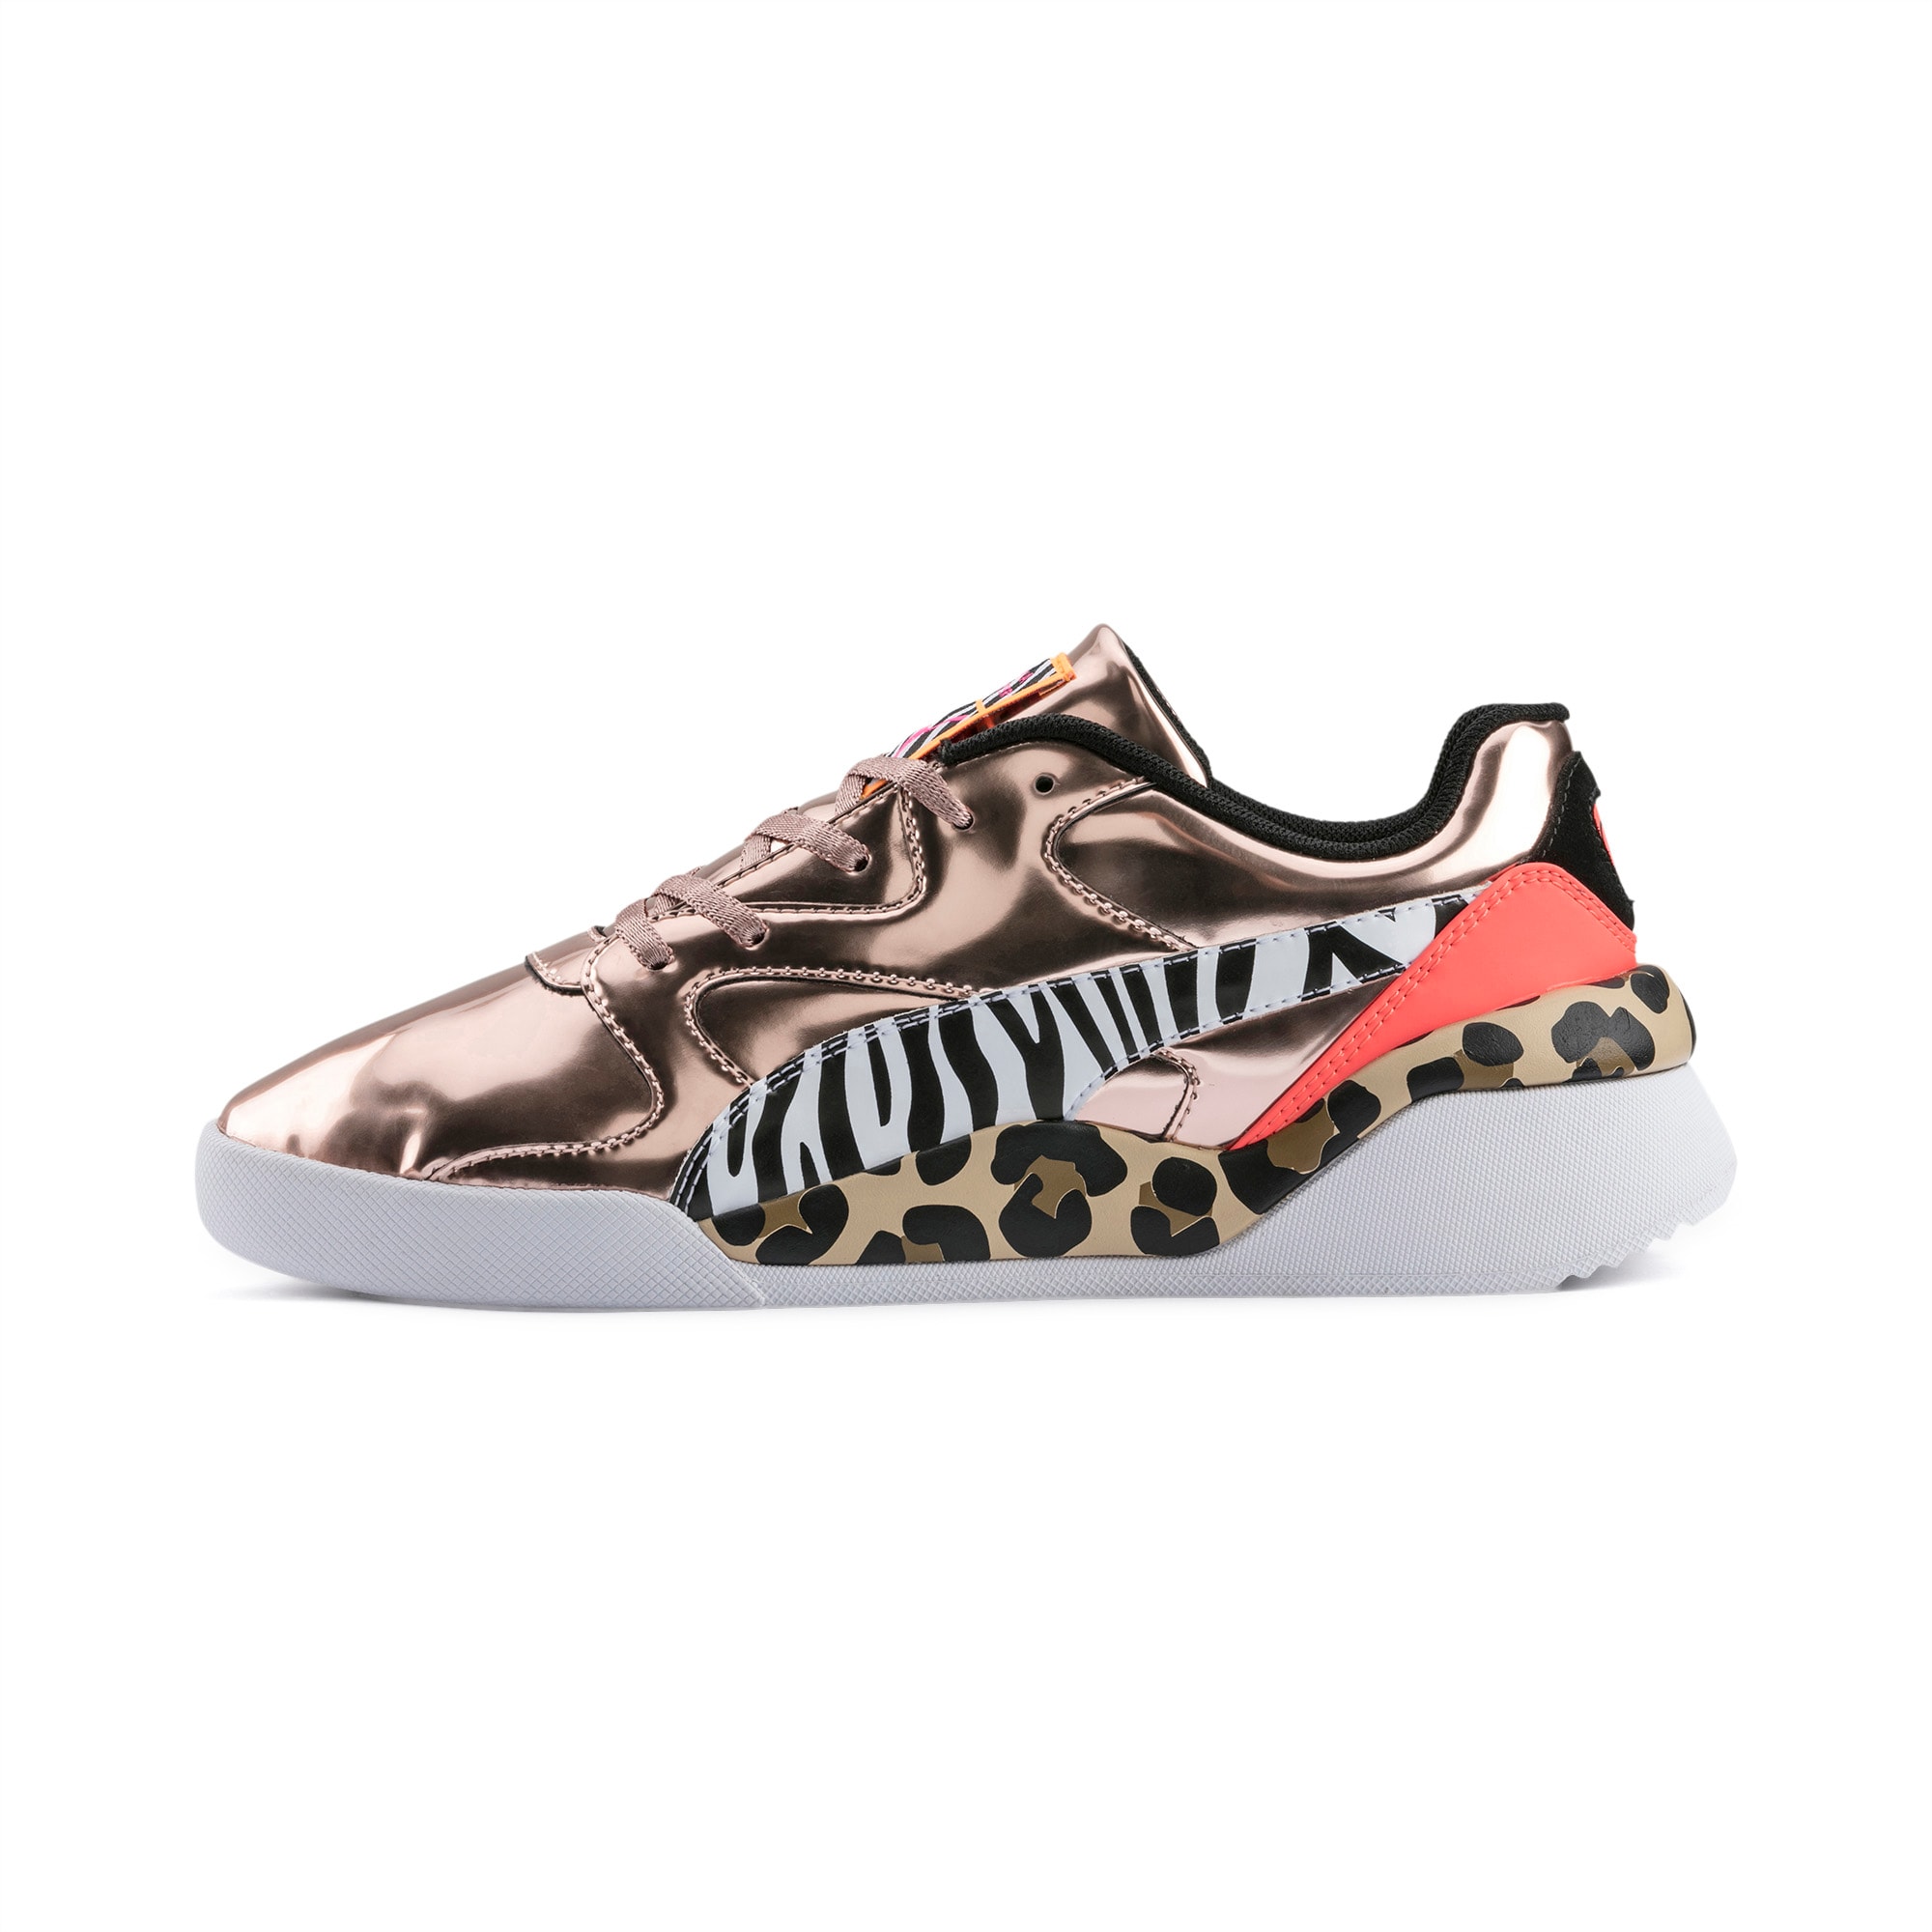 sophia webster puma sneakers